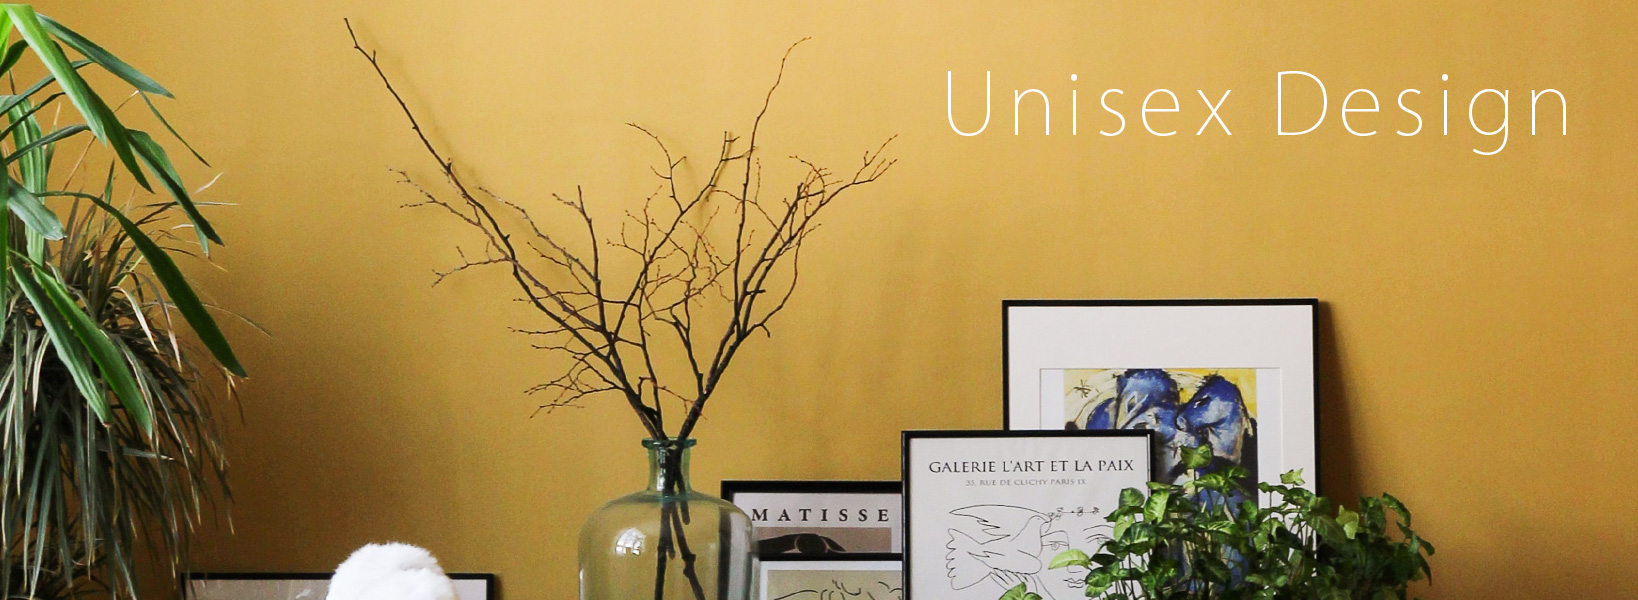 Unisex Design